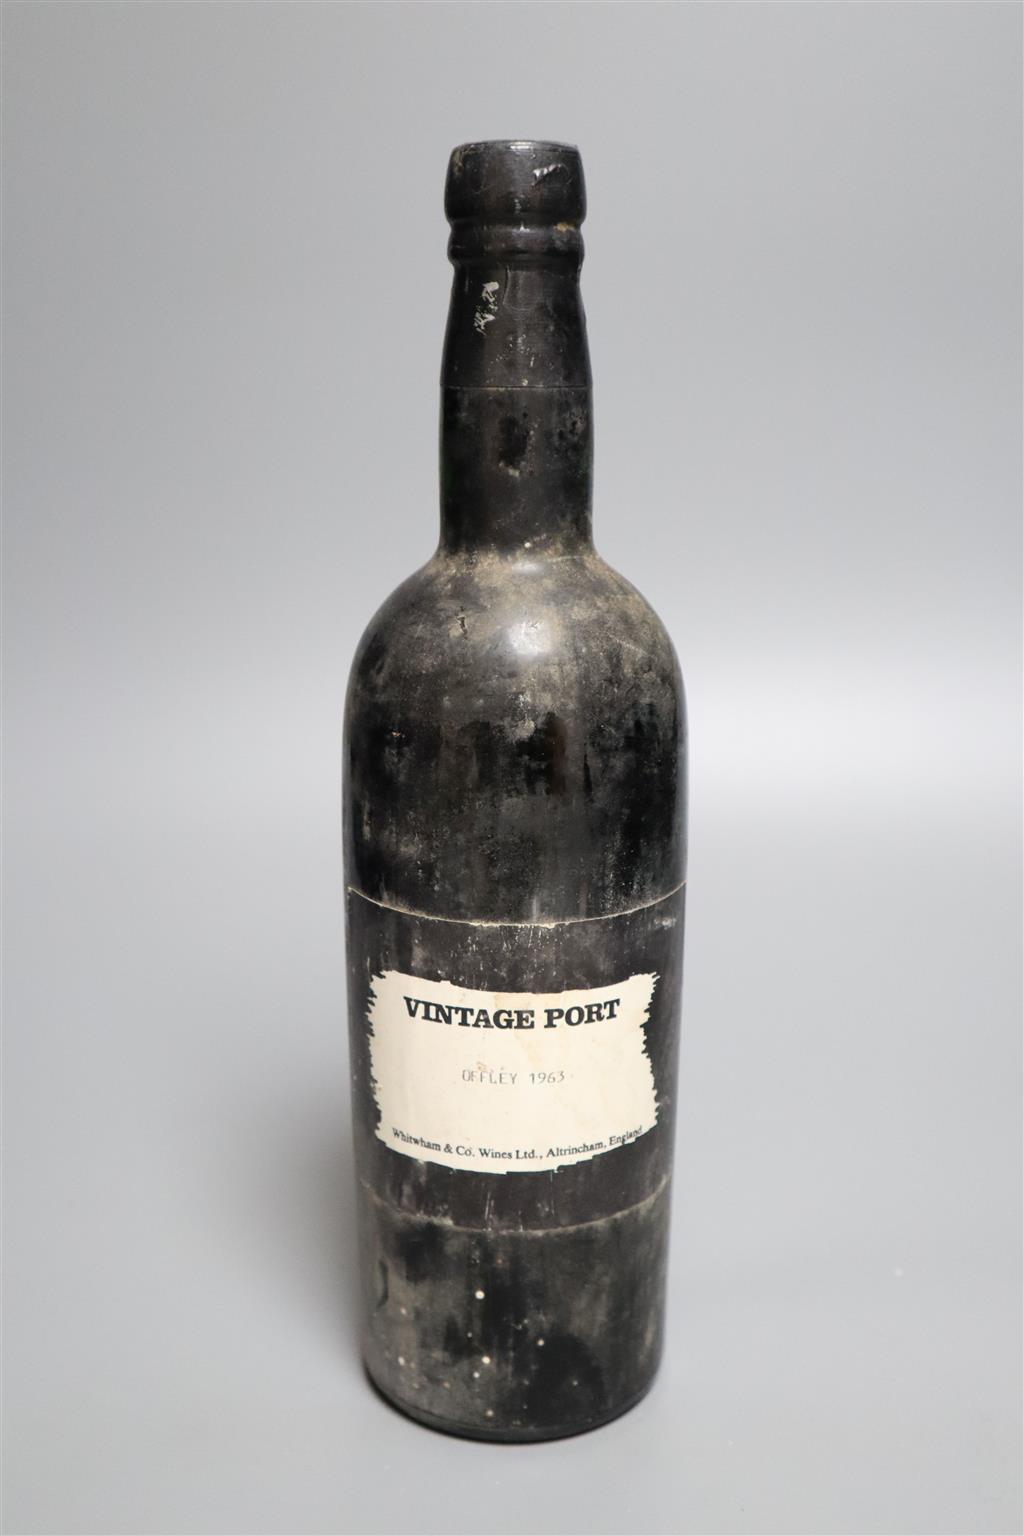 One bottle of 1963 Vintage Port